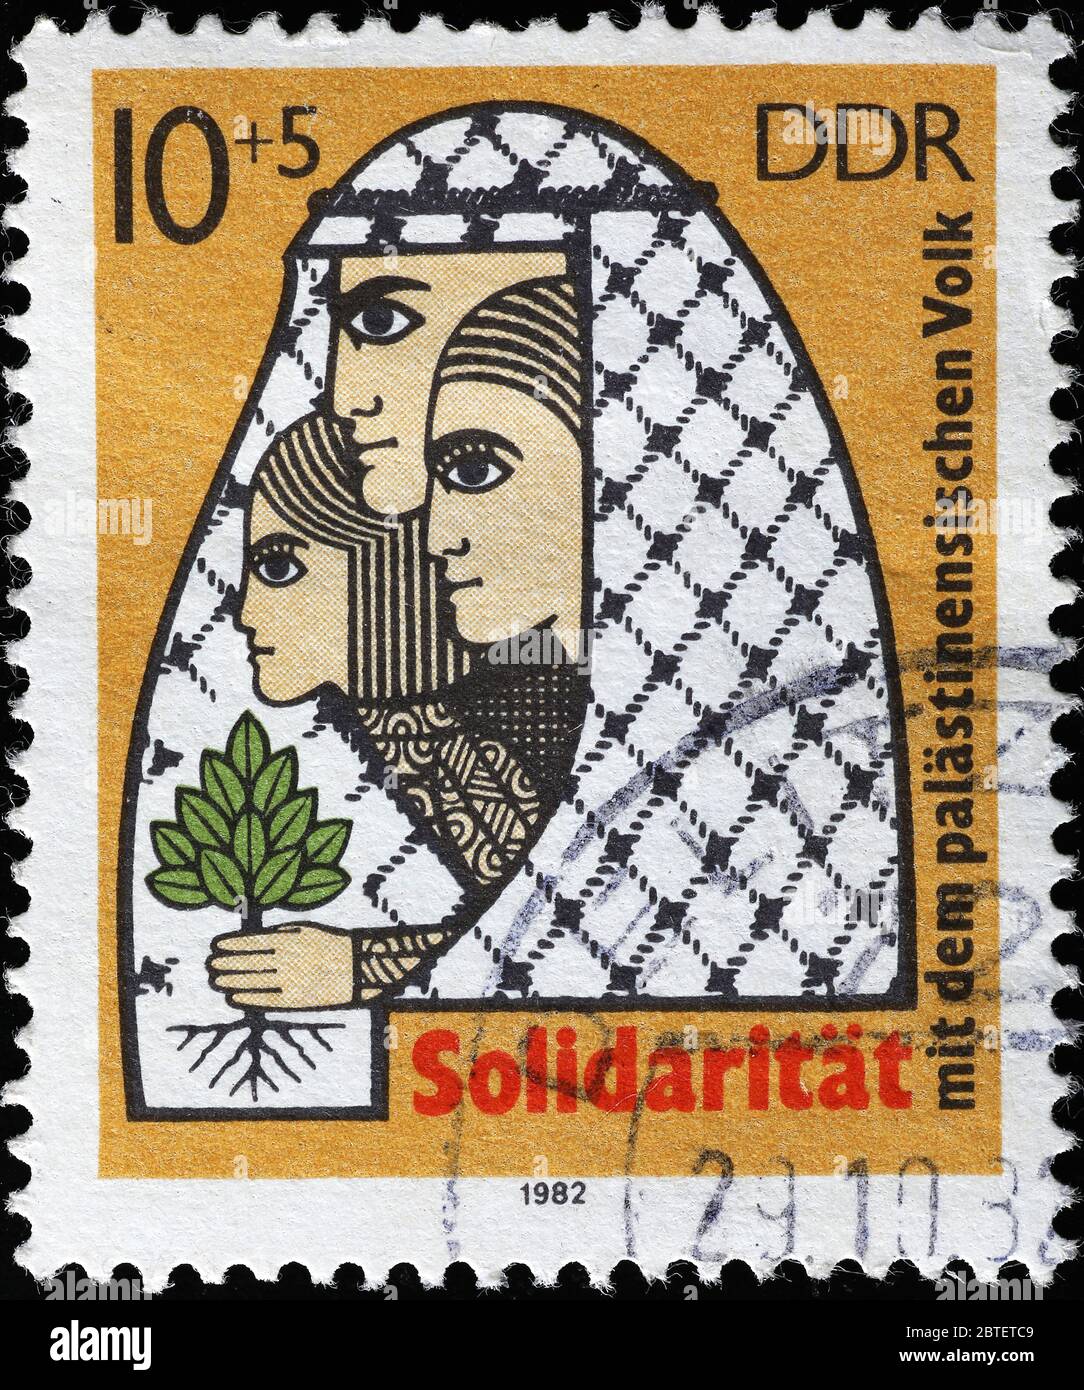 Solidarité pour la cause palestinienne sur le vieux timbre du DDR Banque D'Images